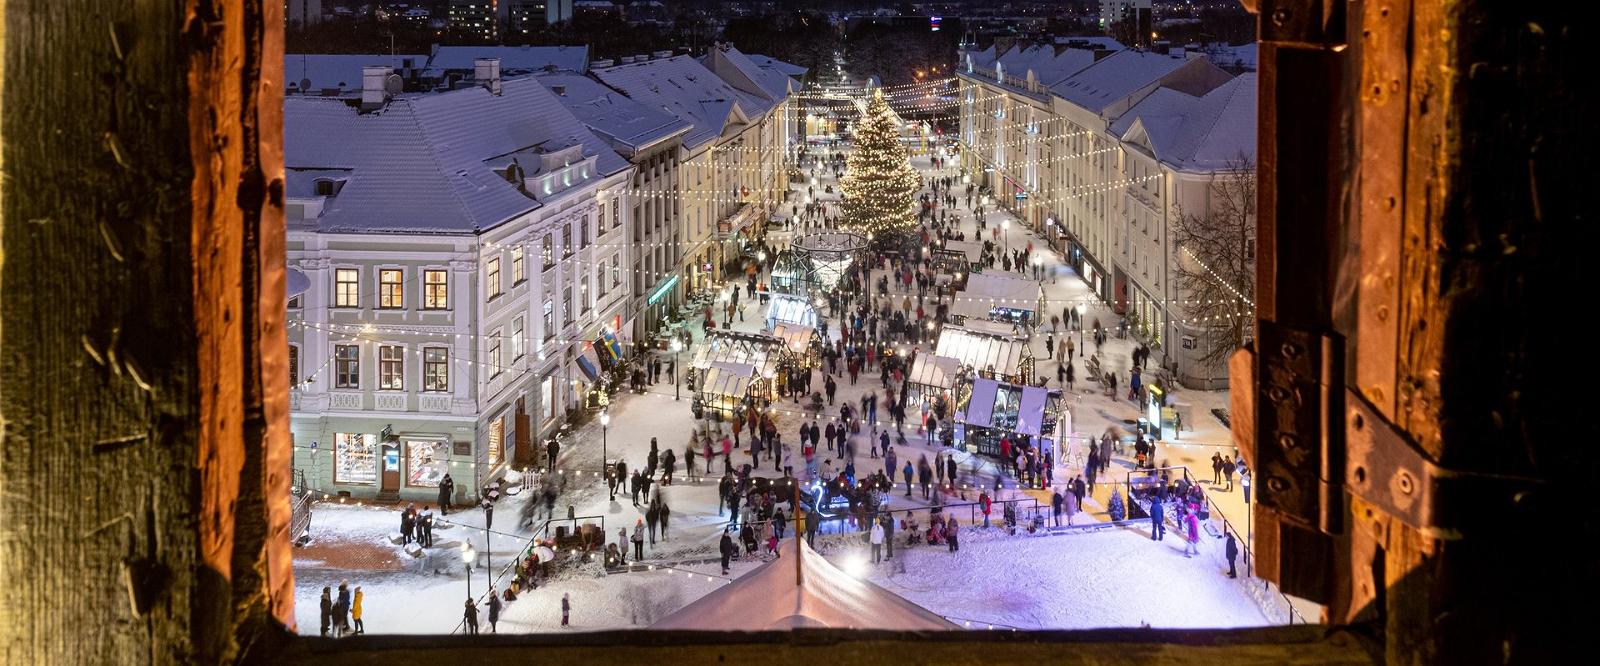 Virtuelle Tour der Stadt Tartu: Blick vom Glockenturm des Rathauses auf die verschneite Weihnachtsstadt Tartu